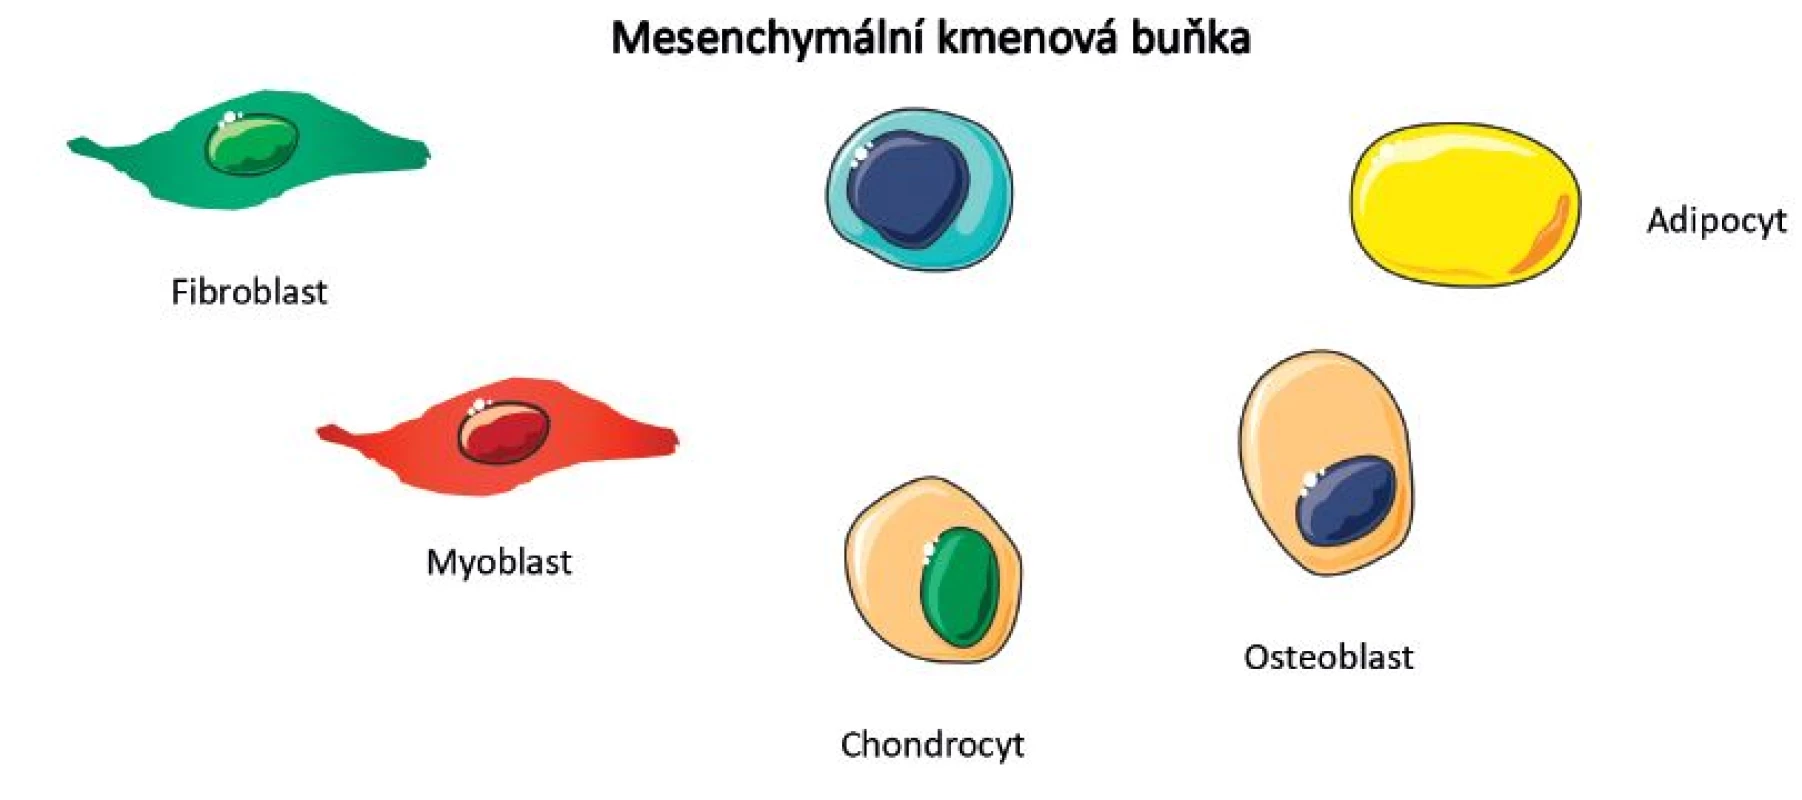 Stronciumranelát – důvody podávání u OA
Osteoblasty a chondrocyty mají stejný embryonální původ – v mezenchymu
Stronciumranelát by mohl působit prostřednictvím receptorů citlivých na vápník (CaSR) exprimovaných chondrocyty (stimulace syntézy mezibuněčné hmoty).